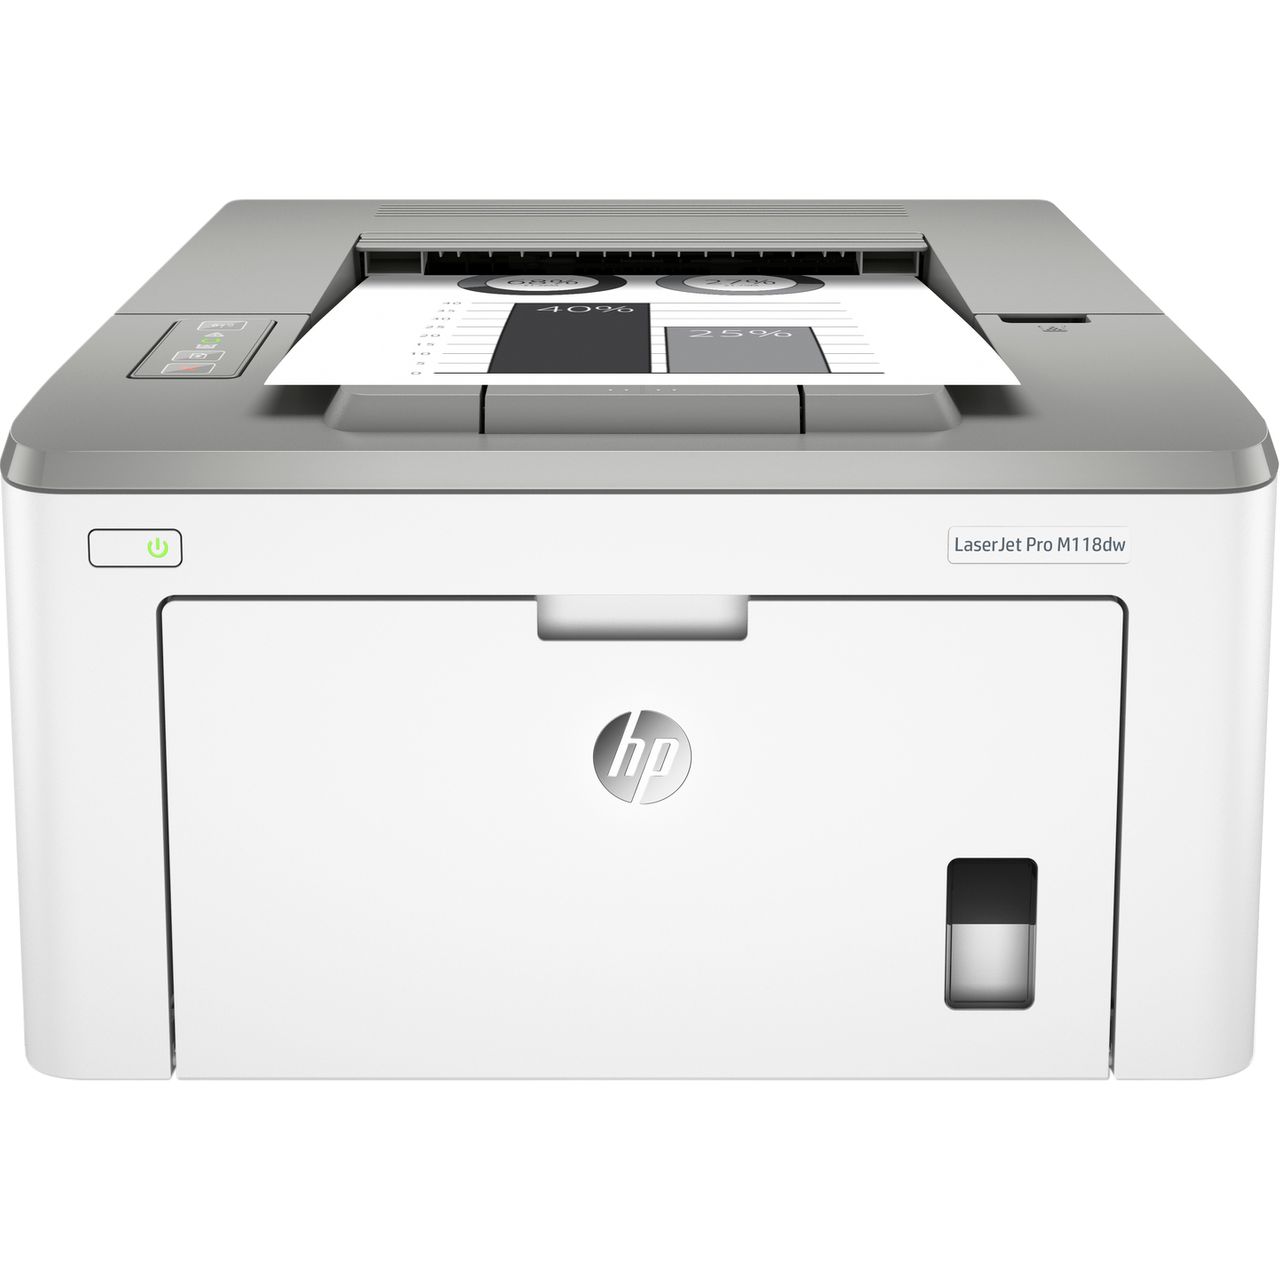 HP LaserJet Pro M118dw Laser Printer Review